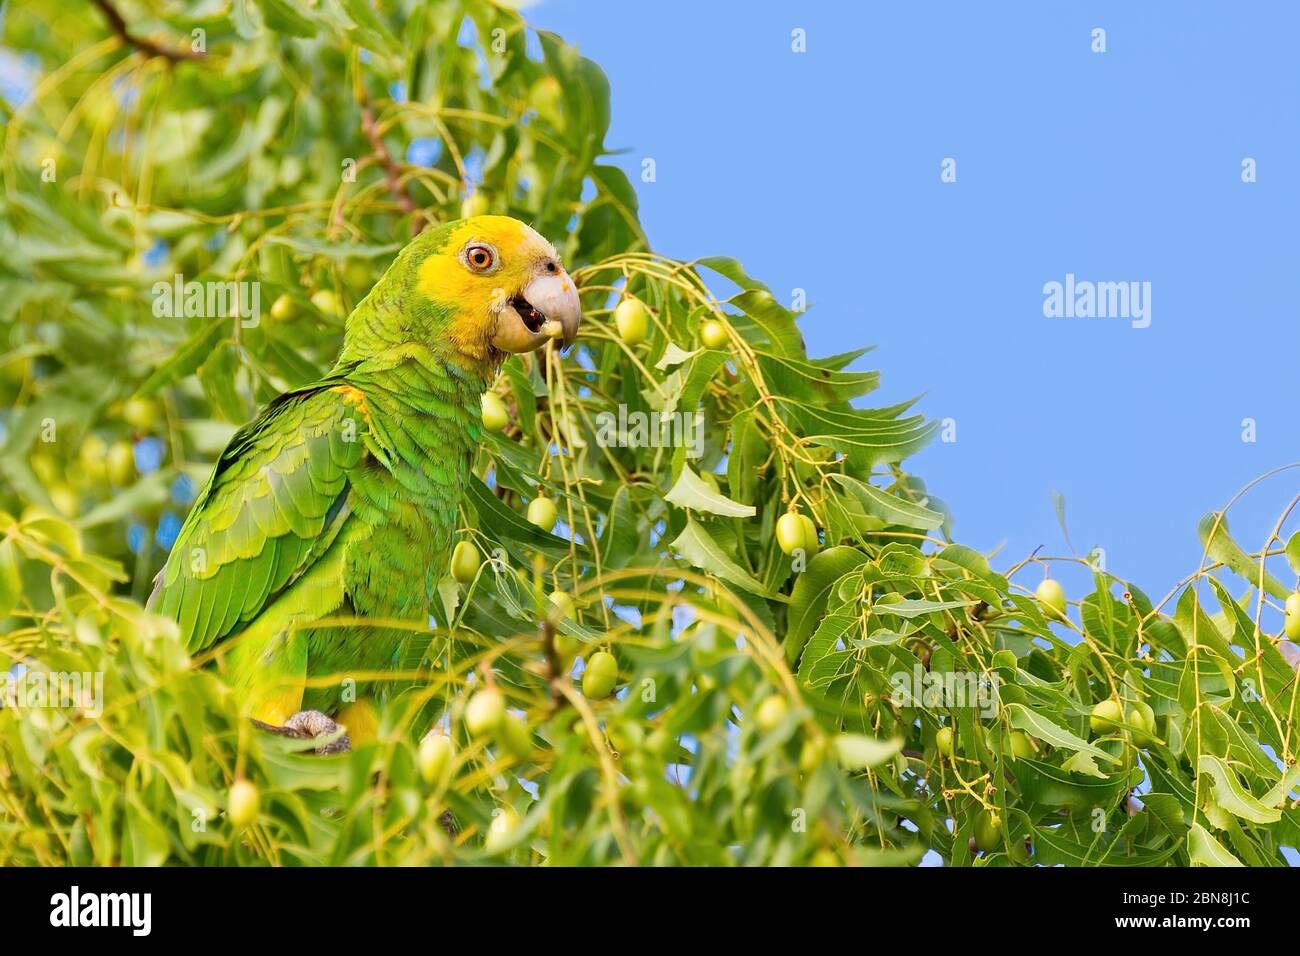 Grüner gelber amazonaspapagei, der in Baumwipfel auf Bonaire Früchte isst Stockfoto